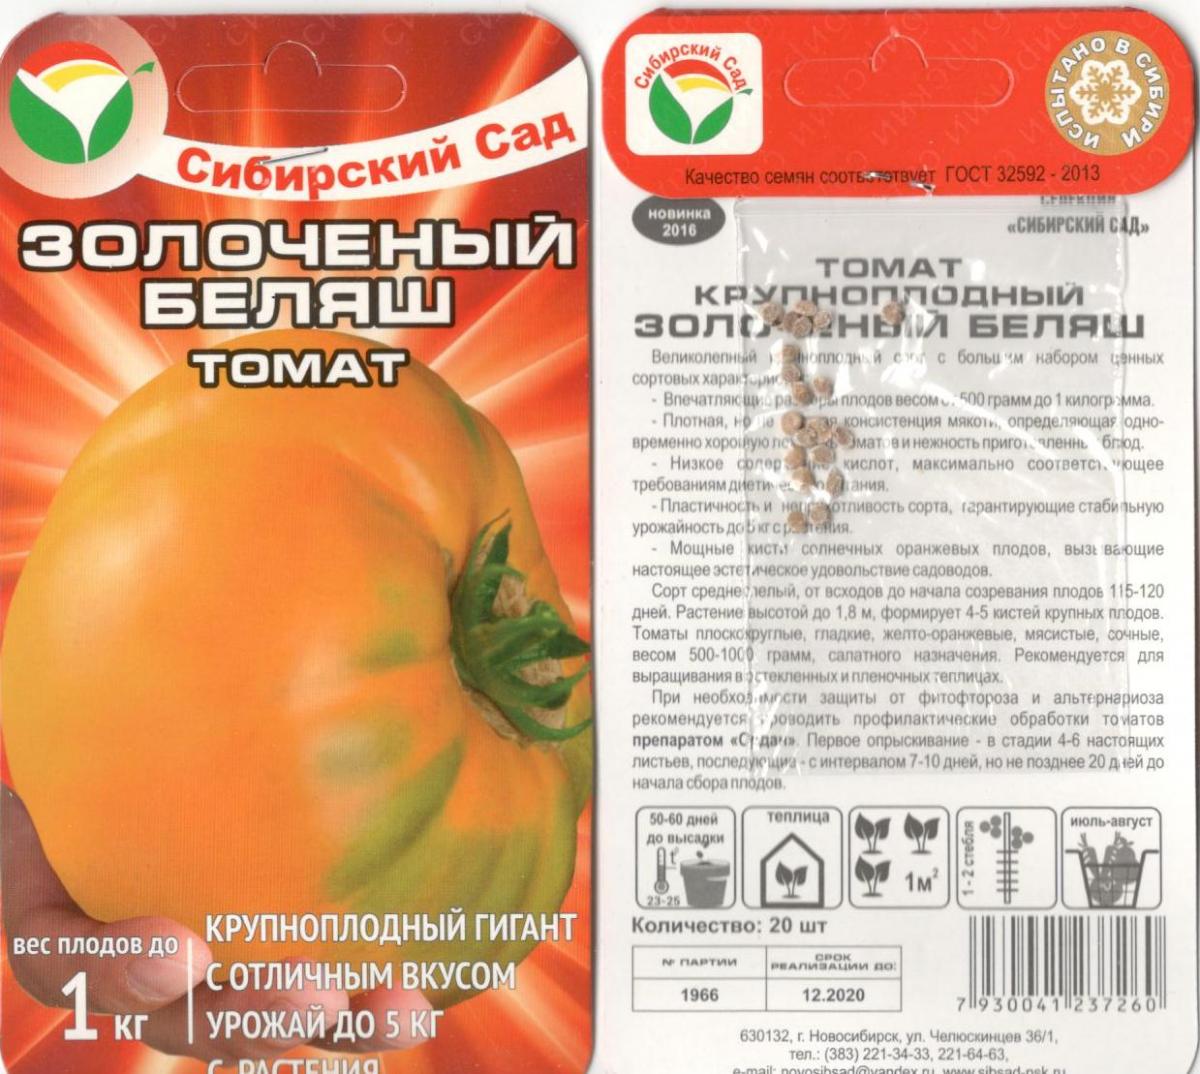 Характеристика крупноплодных томатов Золоченый беляш и агротехника выращивания сорта